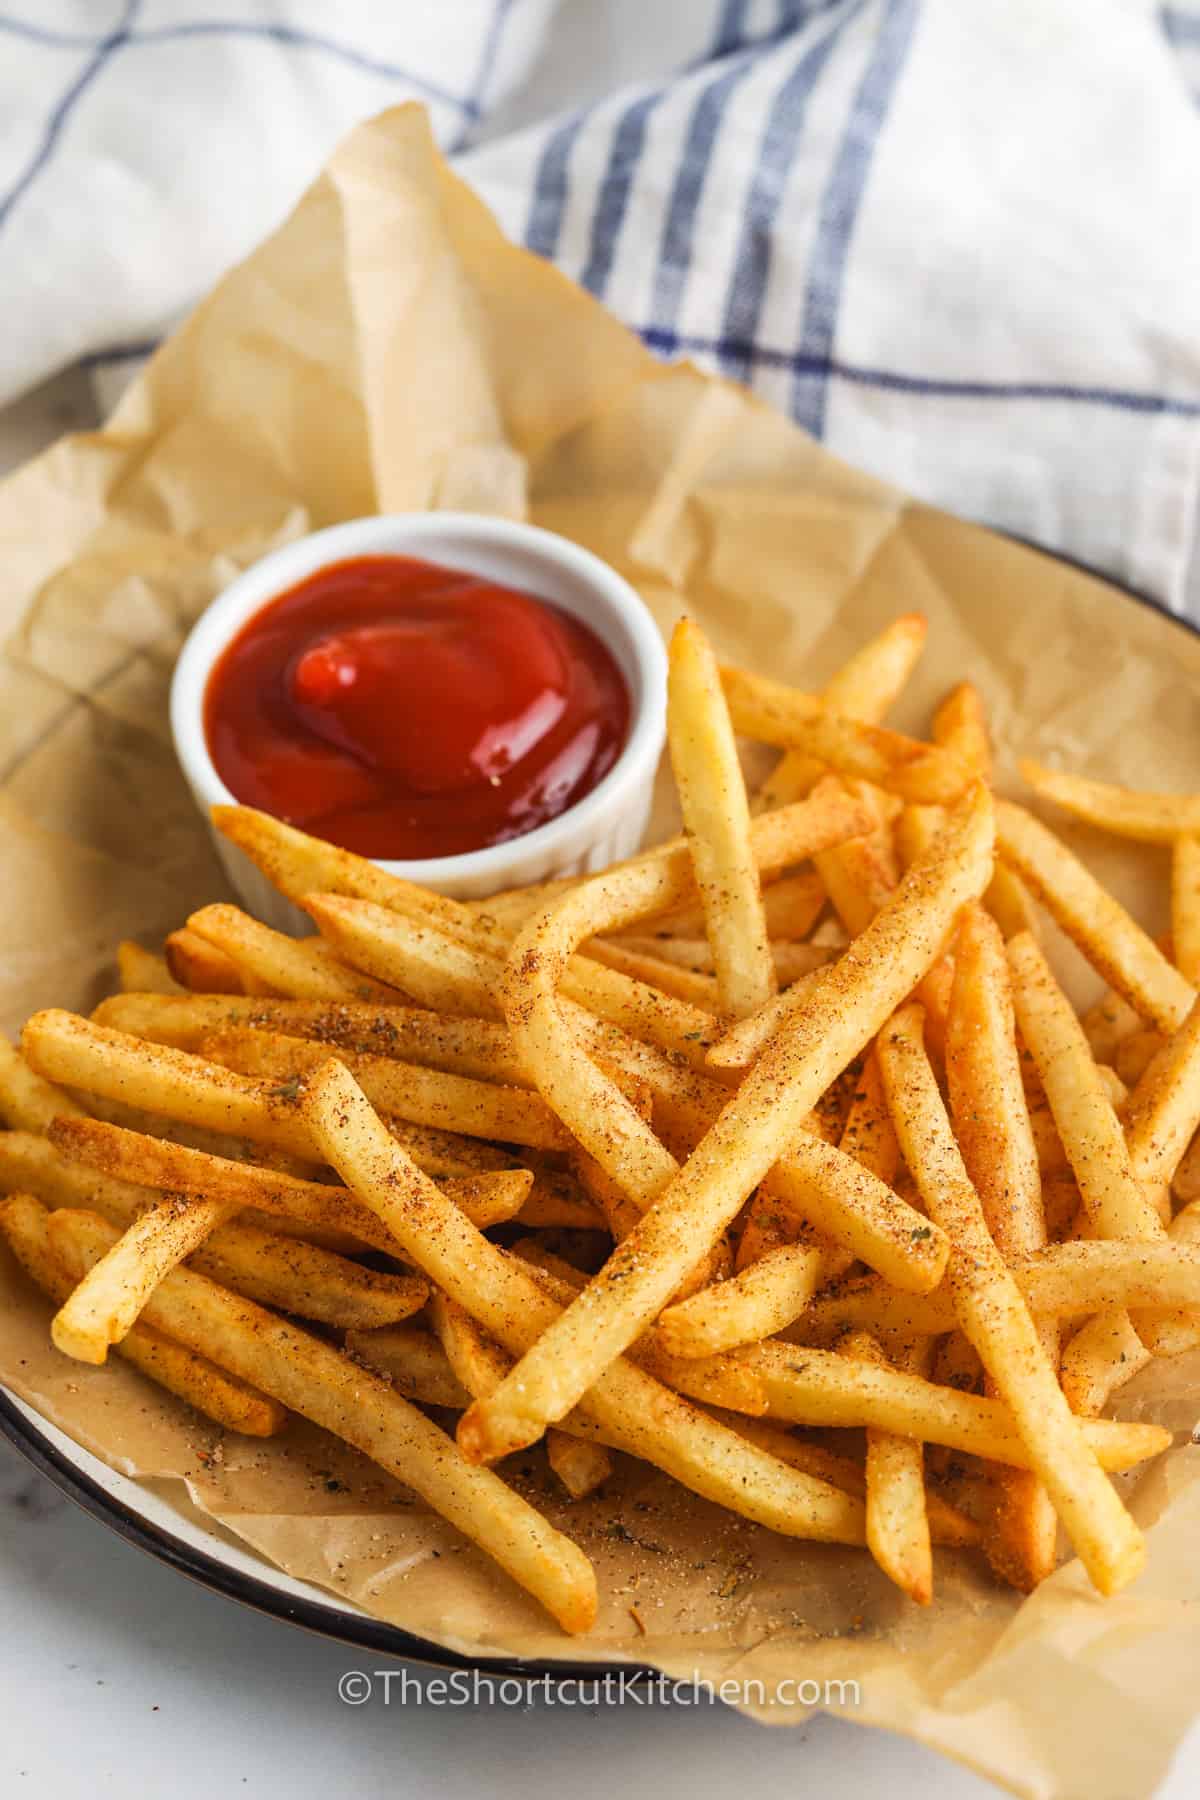 Cajun Fries with ketchup